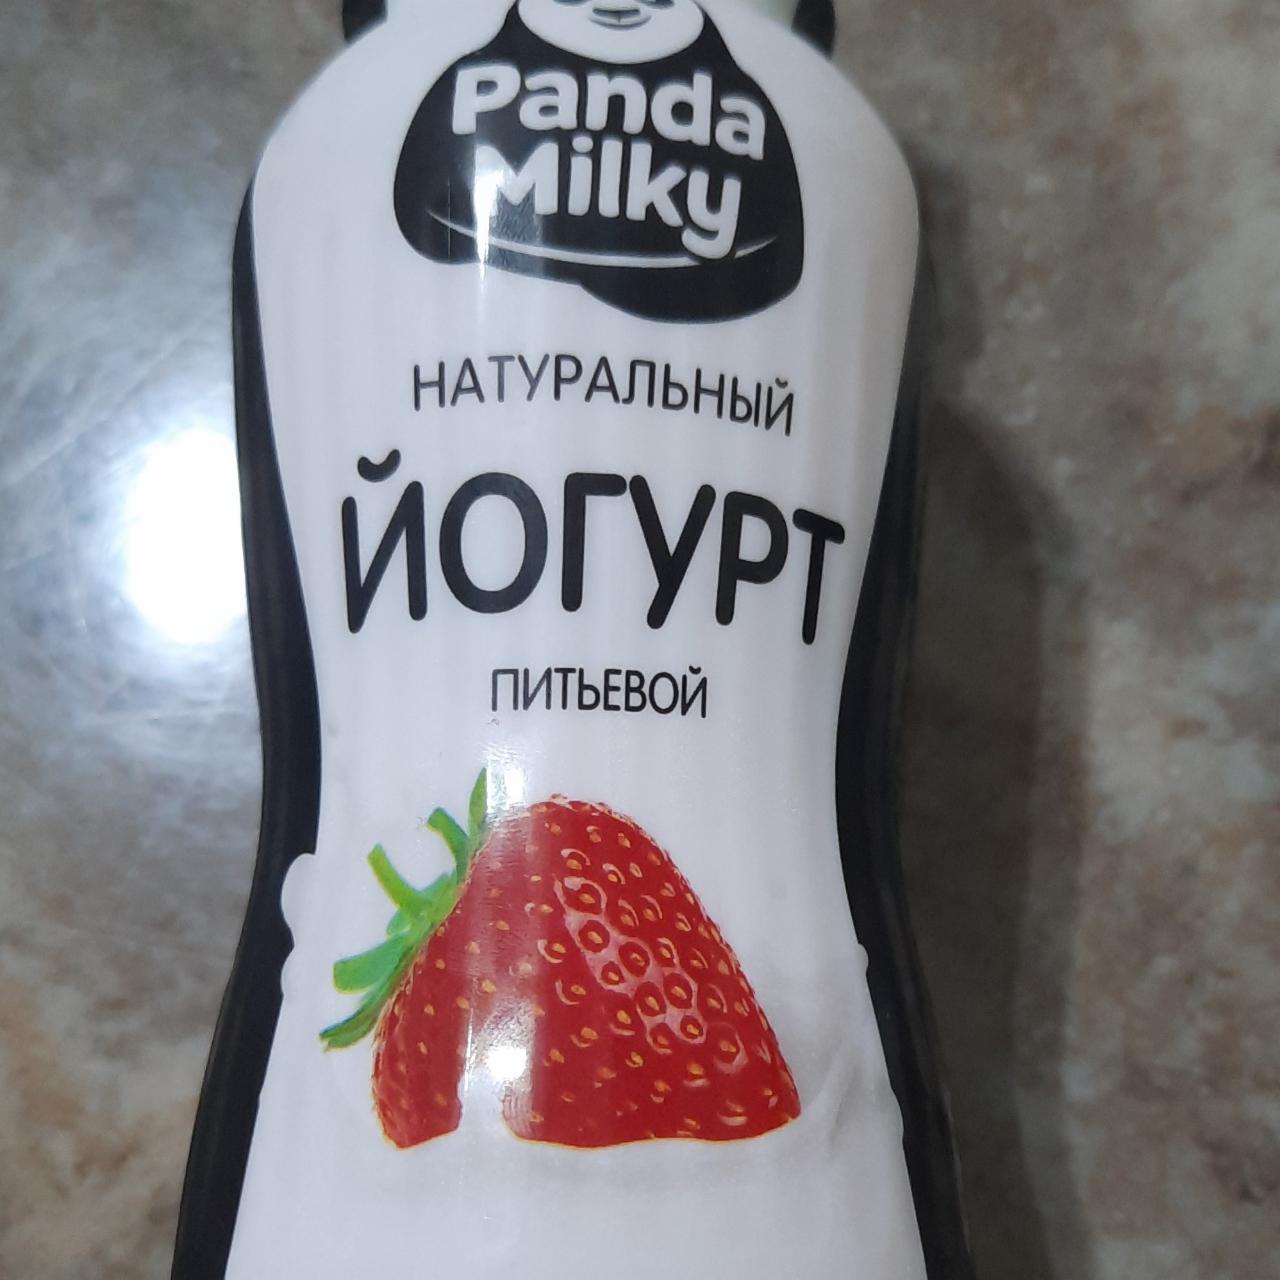 Фото - йогурт питьевой с клубникой Panda milky